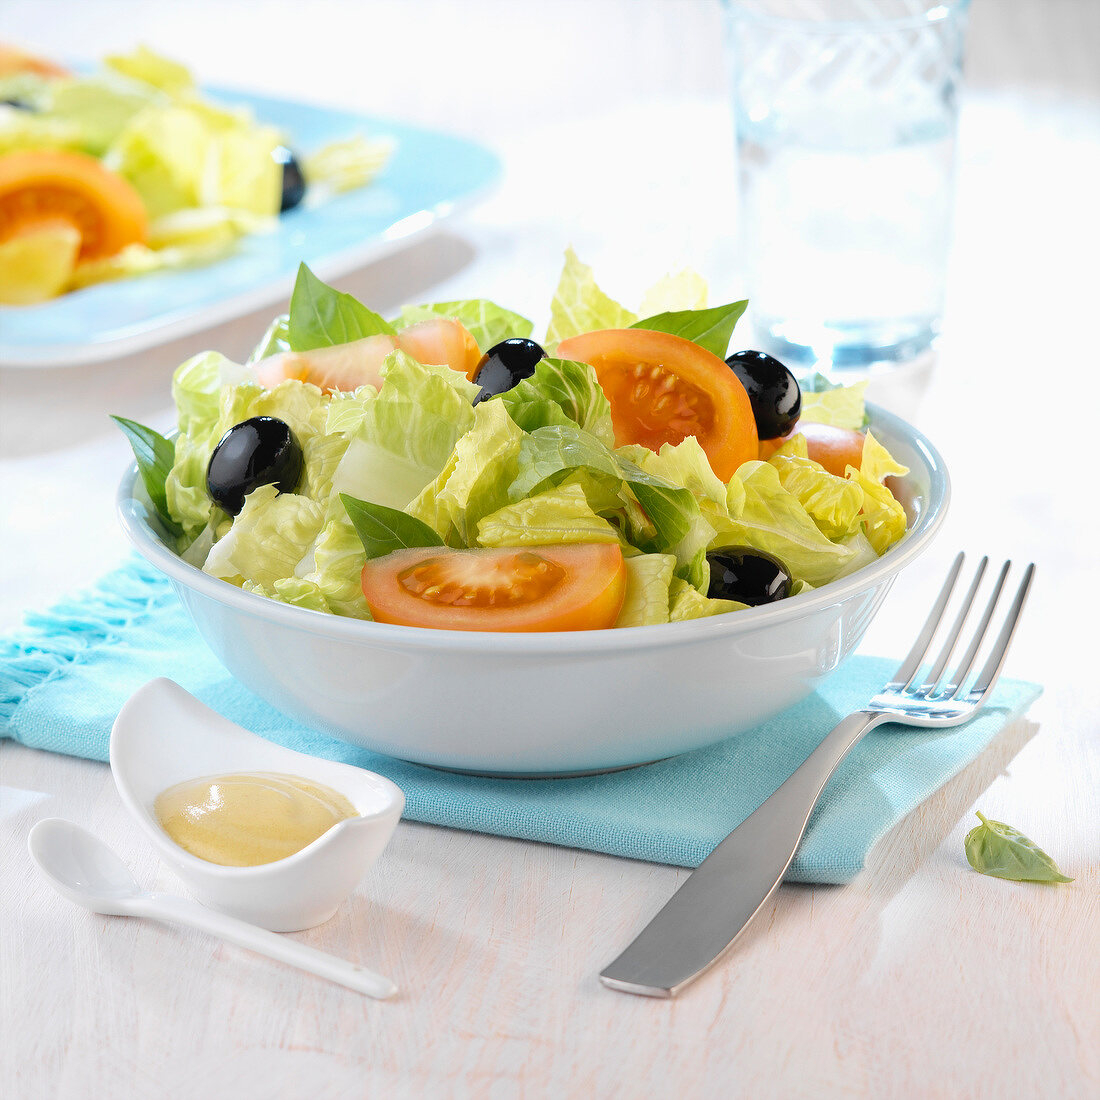 Blattsalat mit Tomaten und schwarzen Oliven